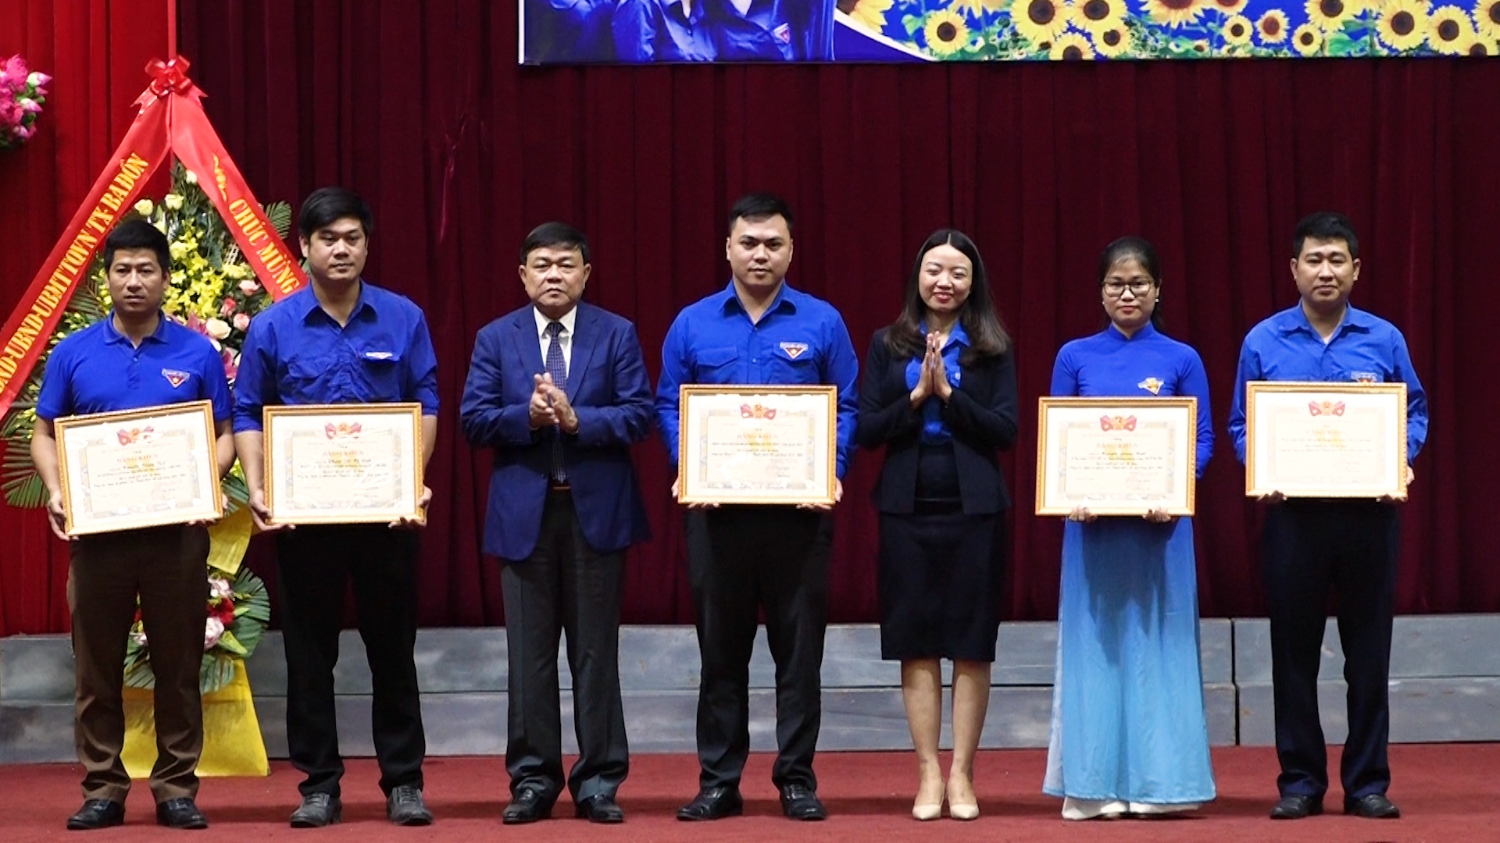 Tỉnh đoàn Quảng Bình khen thưởng cho 02 tập thể và 03 cá nhân vì đã có thành tích xuất sắc trong công tác đoàn và phong trào thanh thiếu nhi giai đoạn 20216 2020